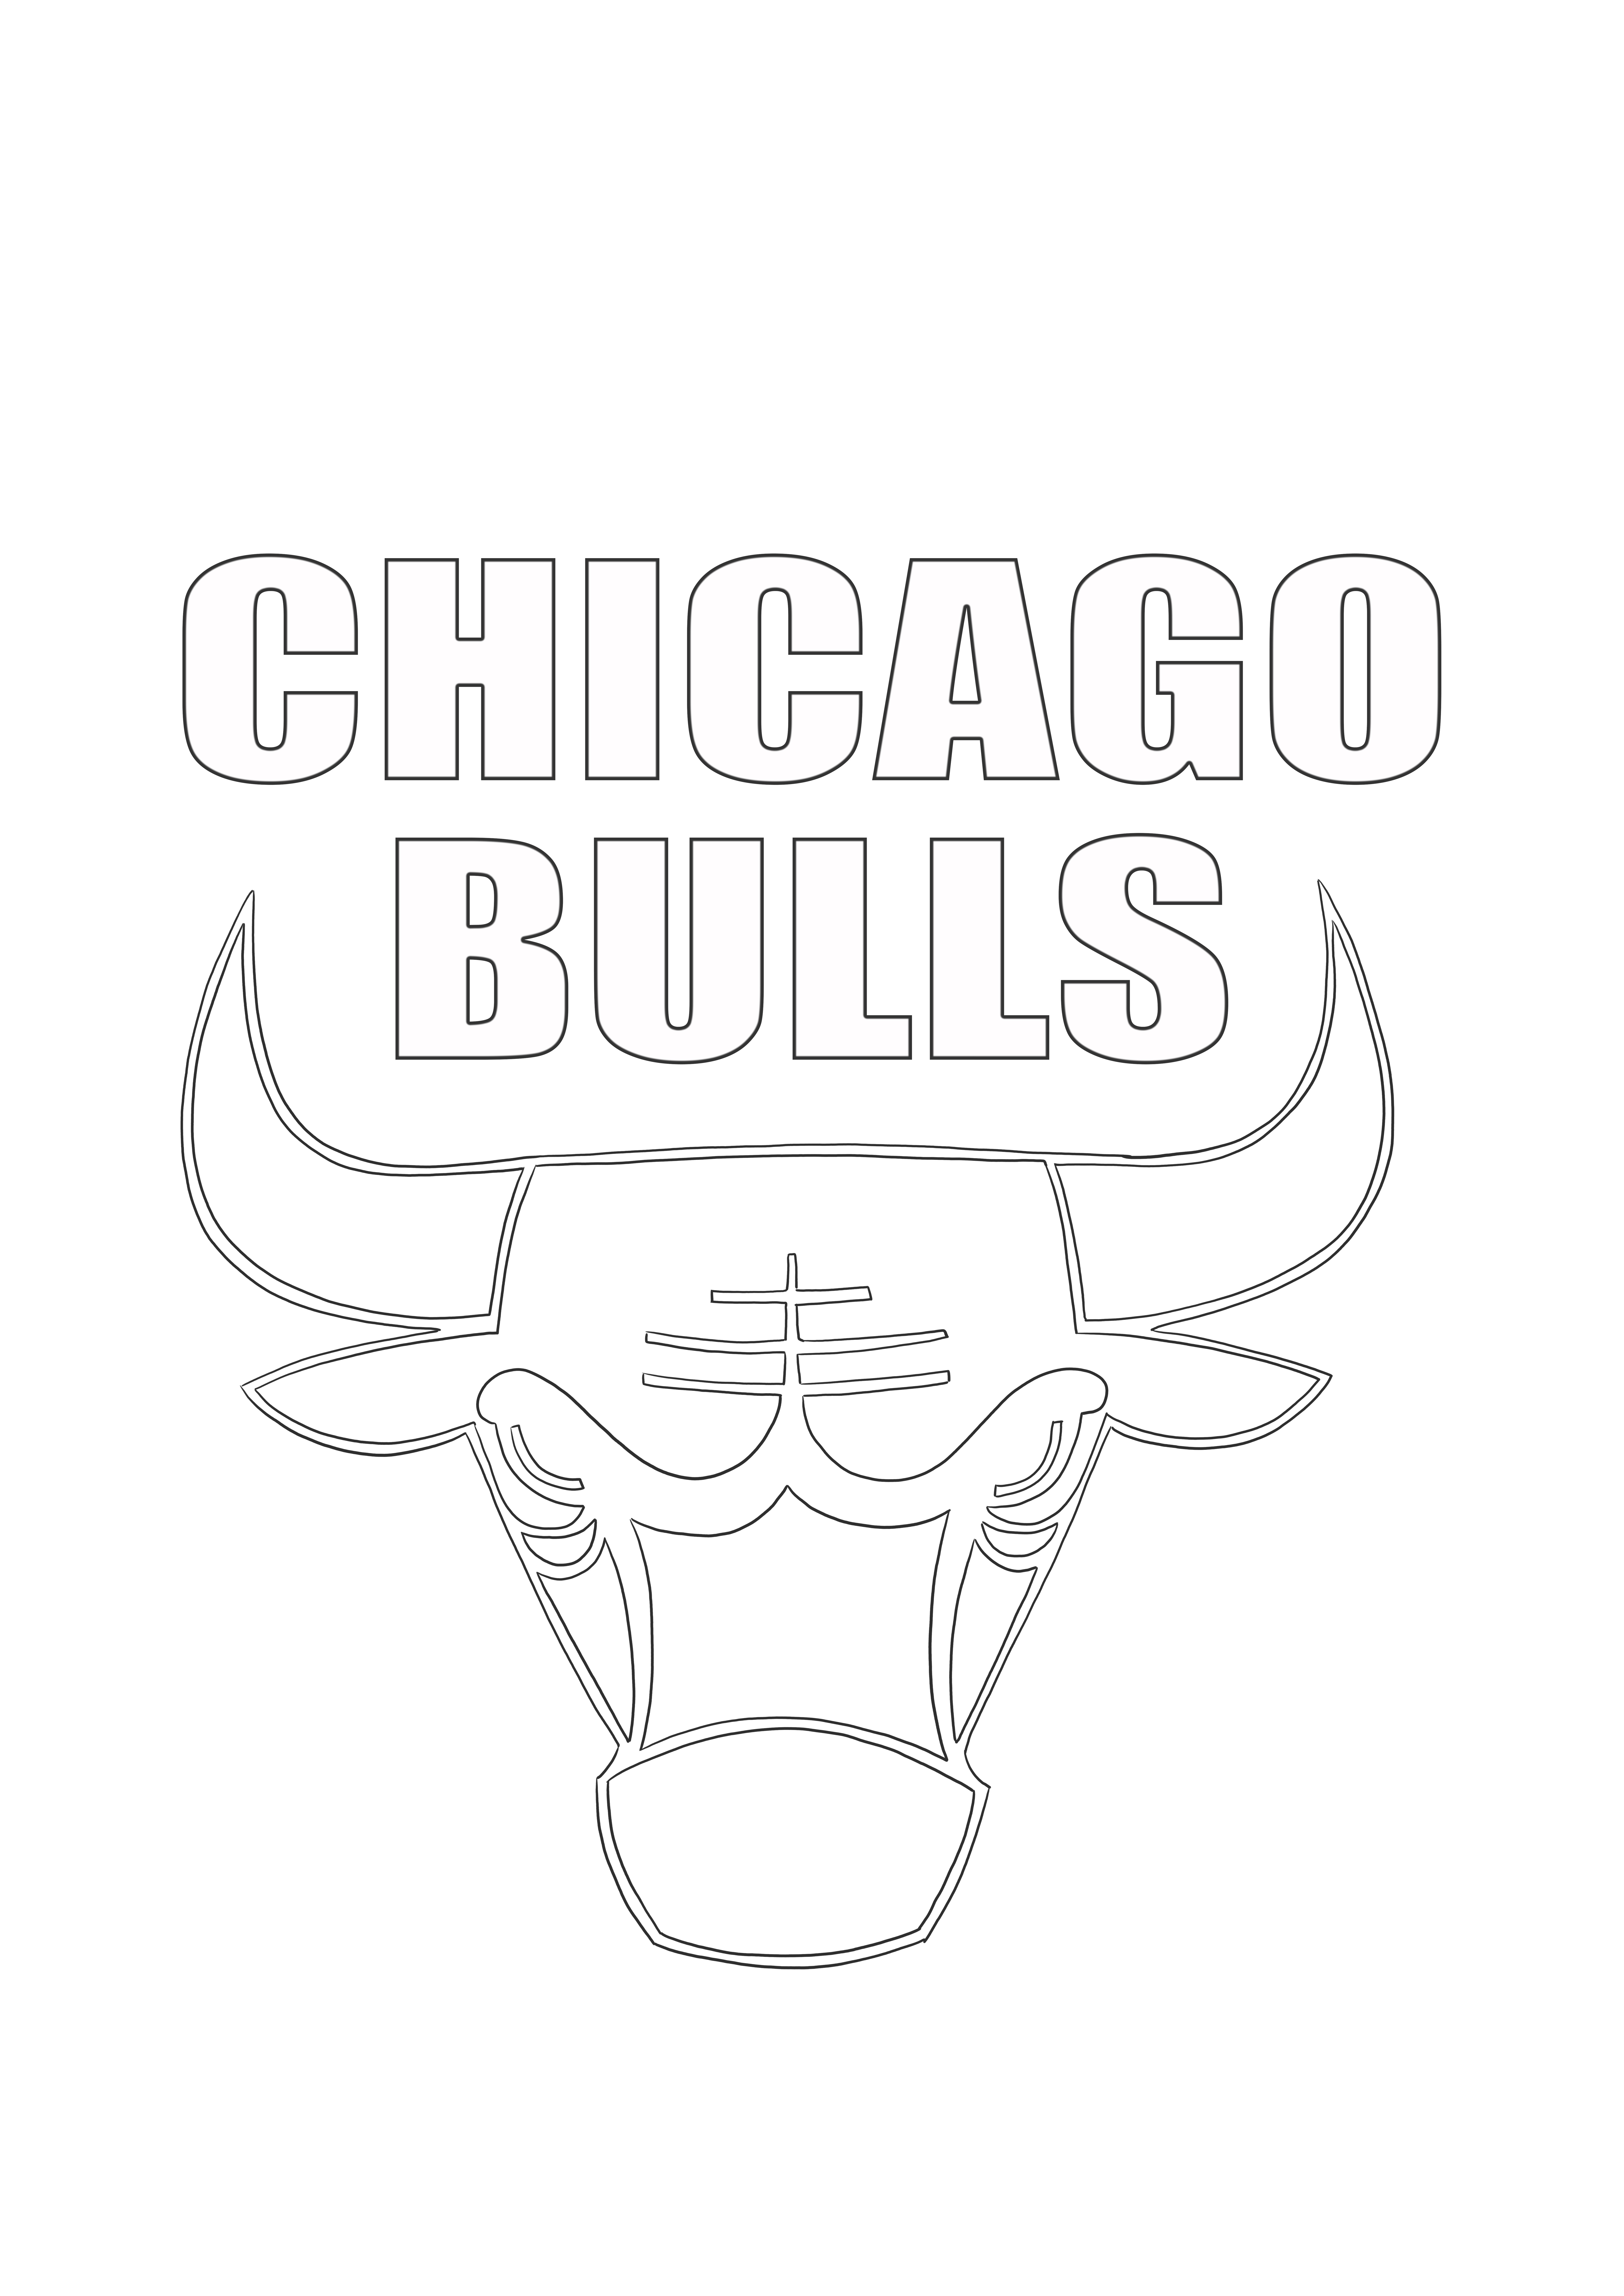 Logo Chicago Bulls do kolorowania za darmo do wydrukowania i pokolorowania